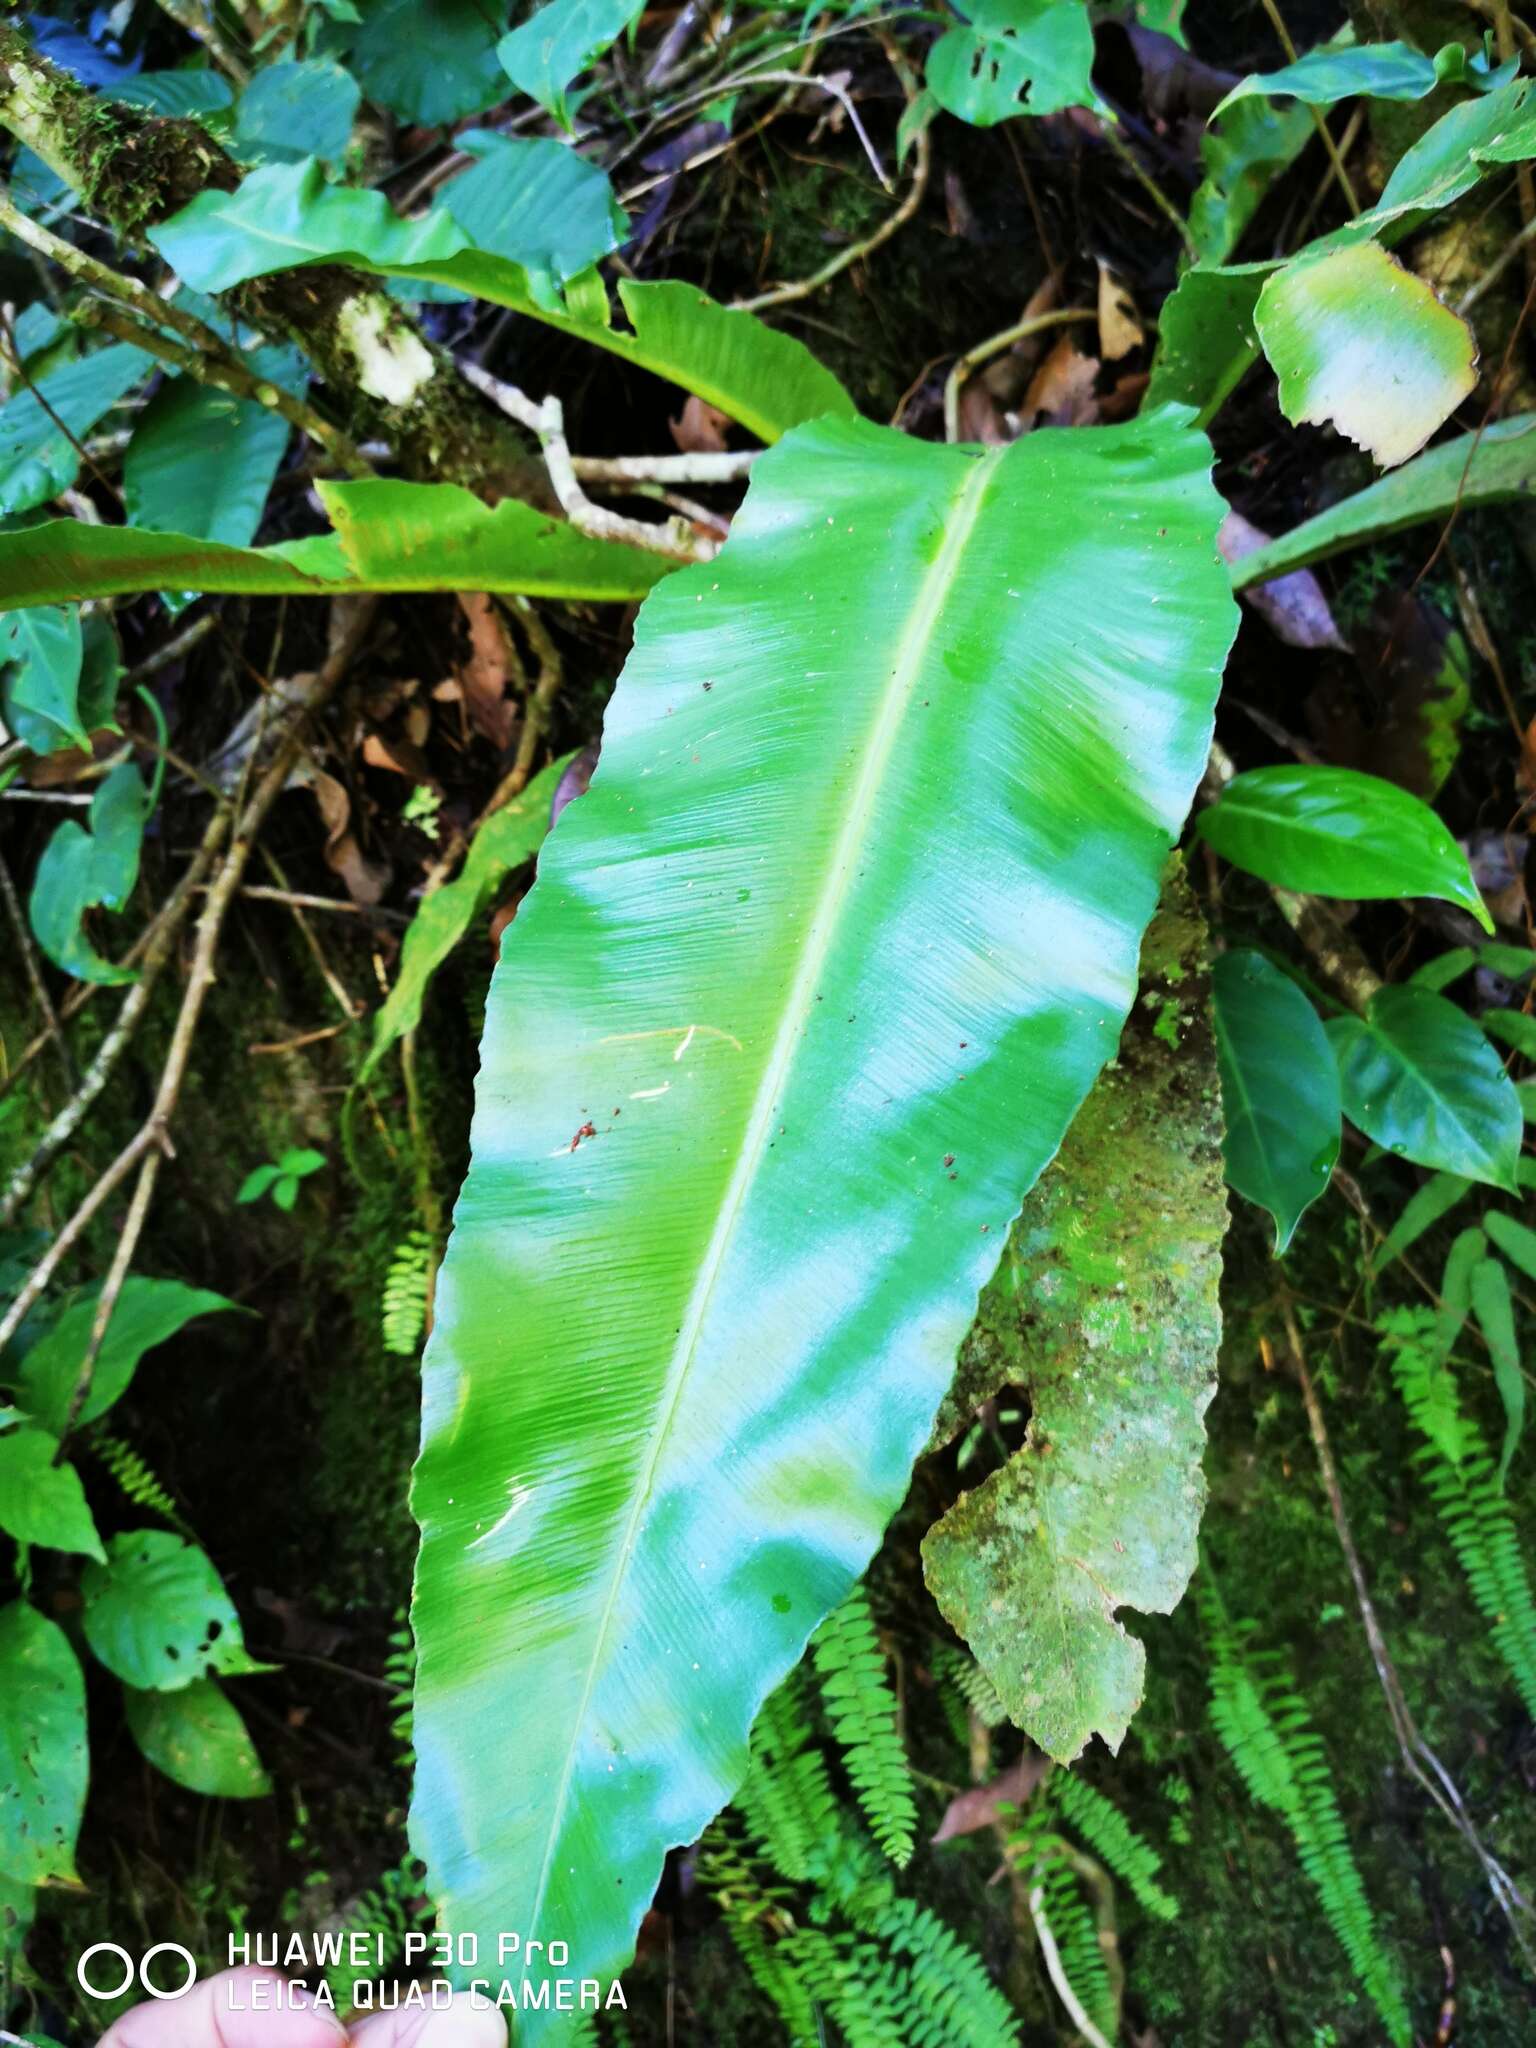 Sivun Asplenium serratum L. kuva